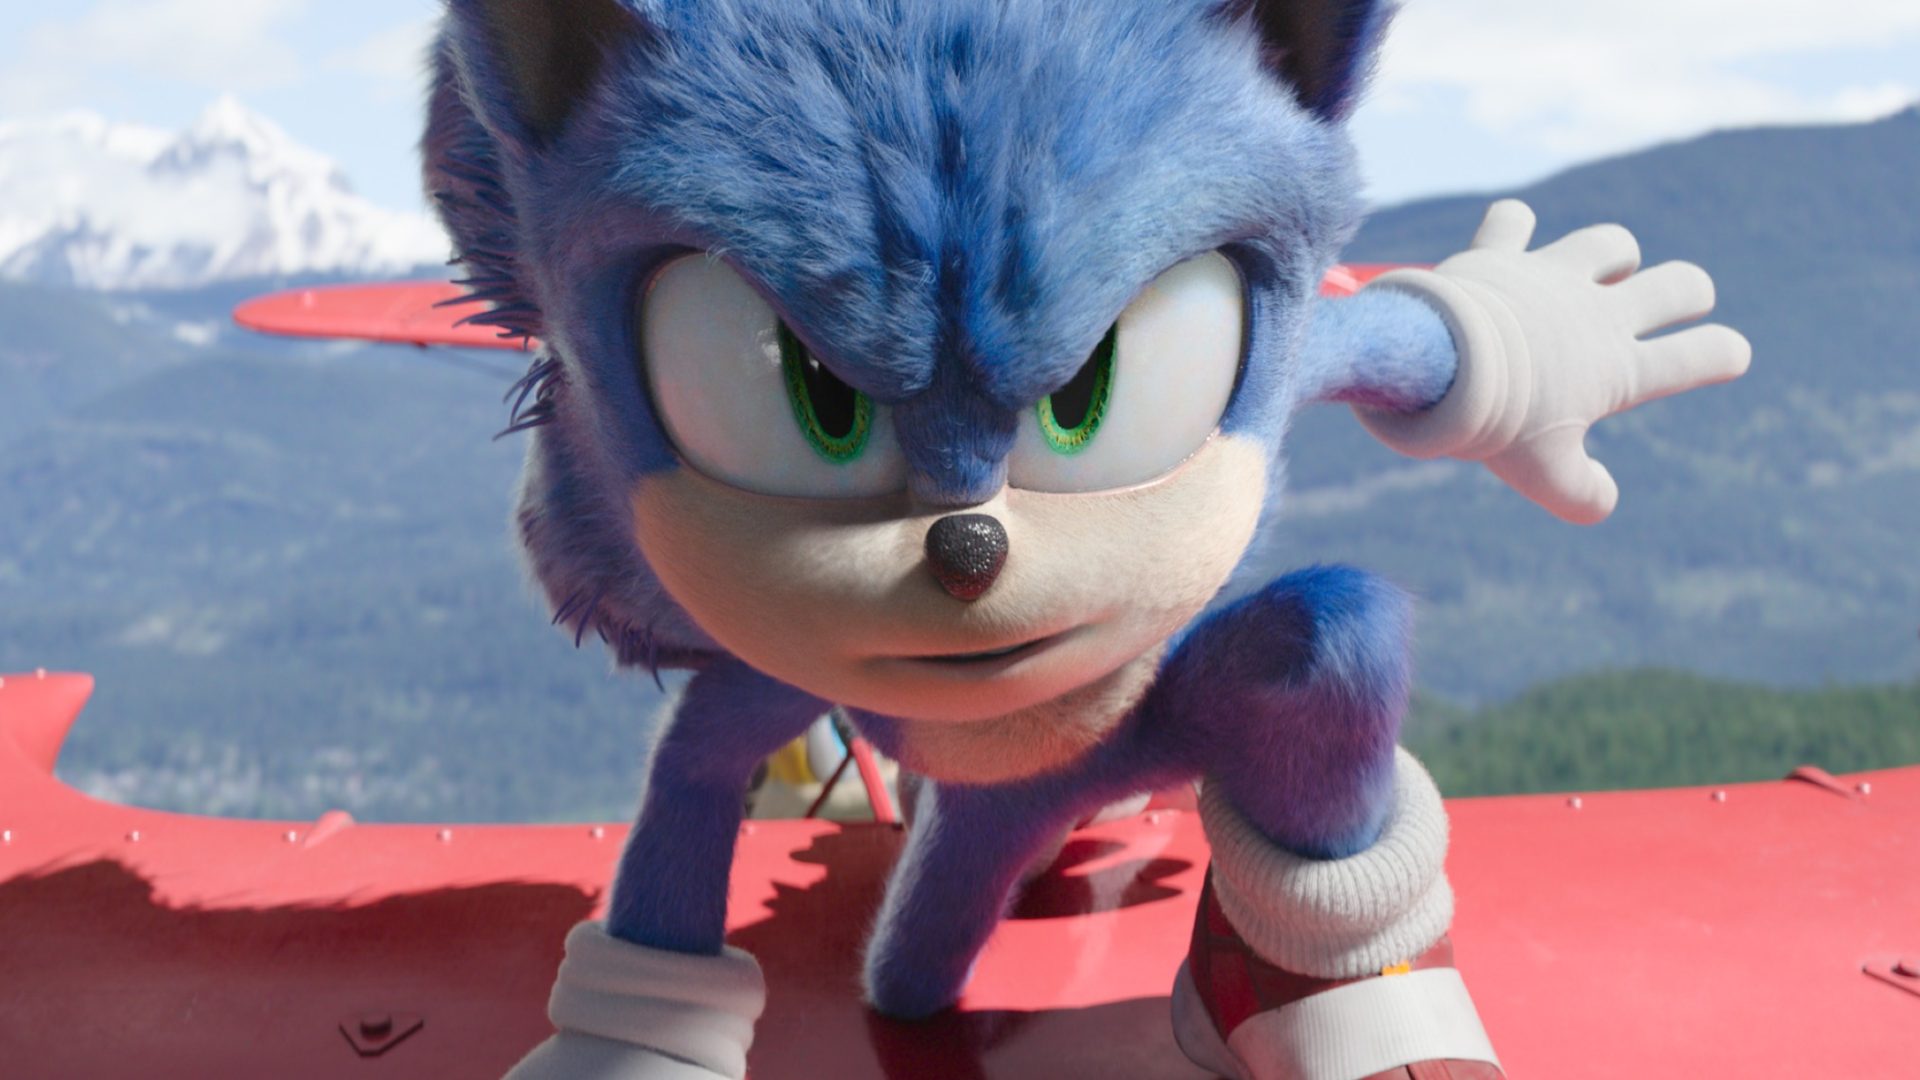 Sonic - O Filme 2 tem data de lançamento definida - Canaltech